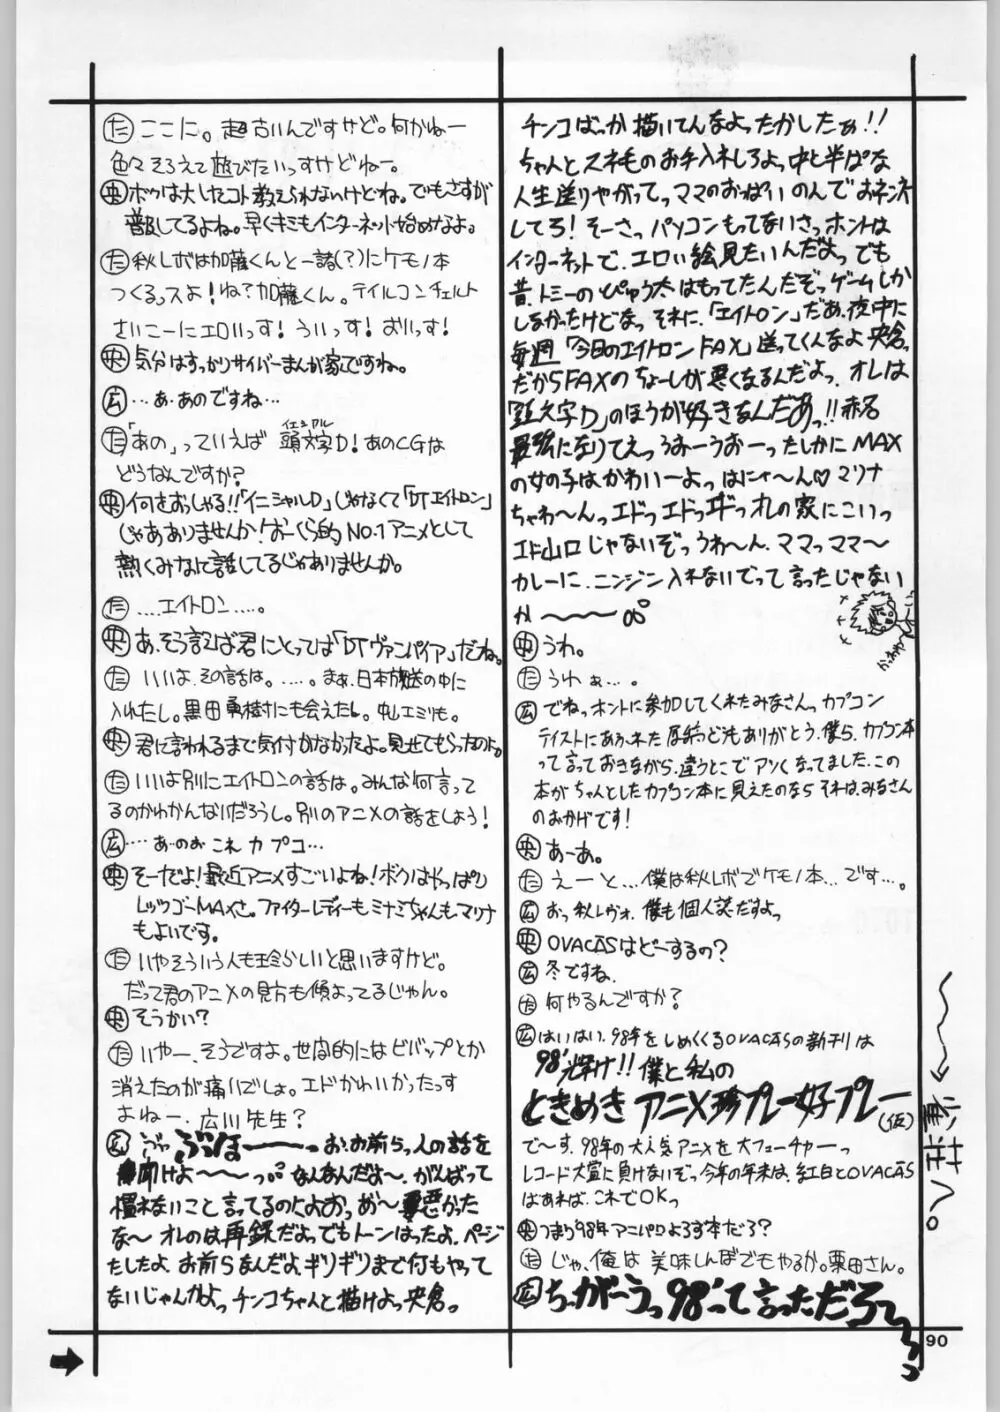 カプリコン1 ディレクターズカット 89ページ